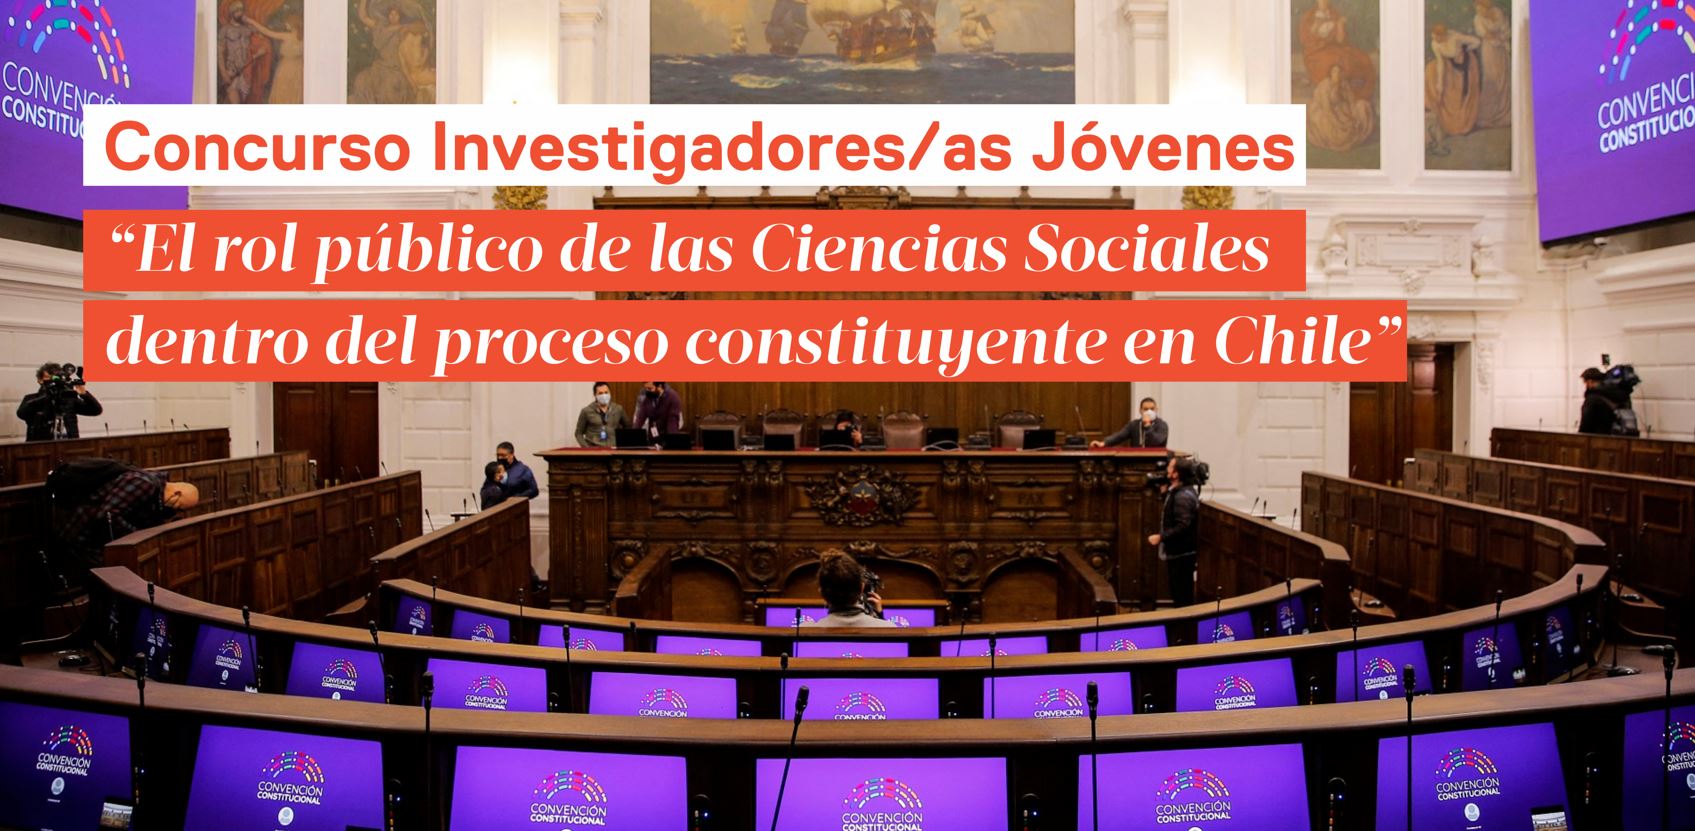 “El rol público de las Ciencias Sociales dentro del proceso constituyente en Chile”, uno de los proyectos adjudicados del Concurso de Investigadoras/es Jóvenes 2021